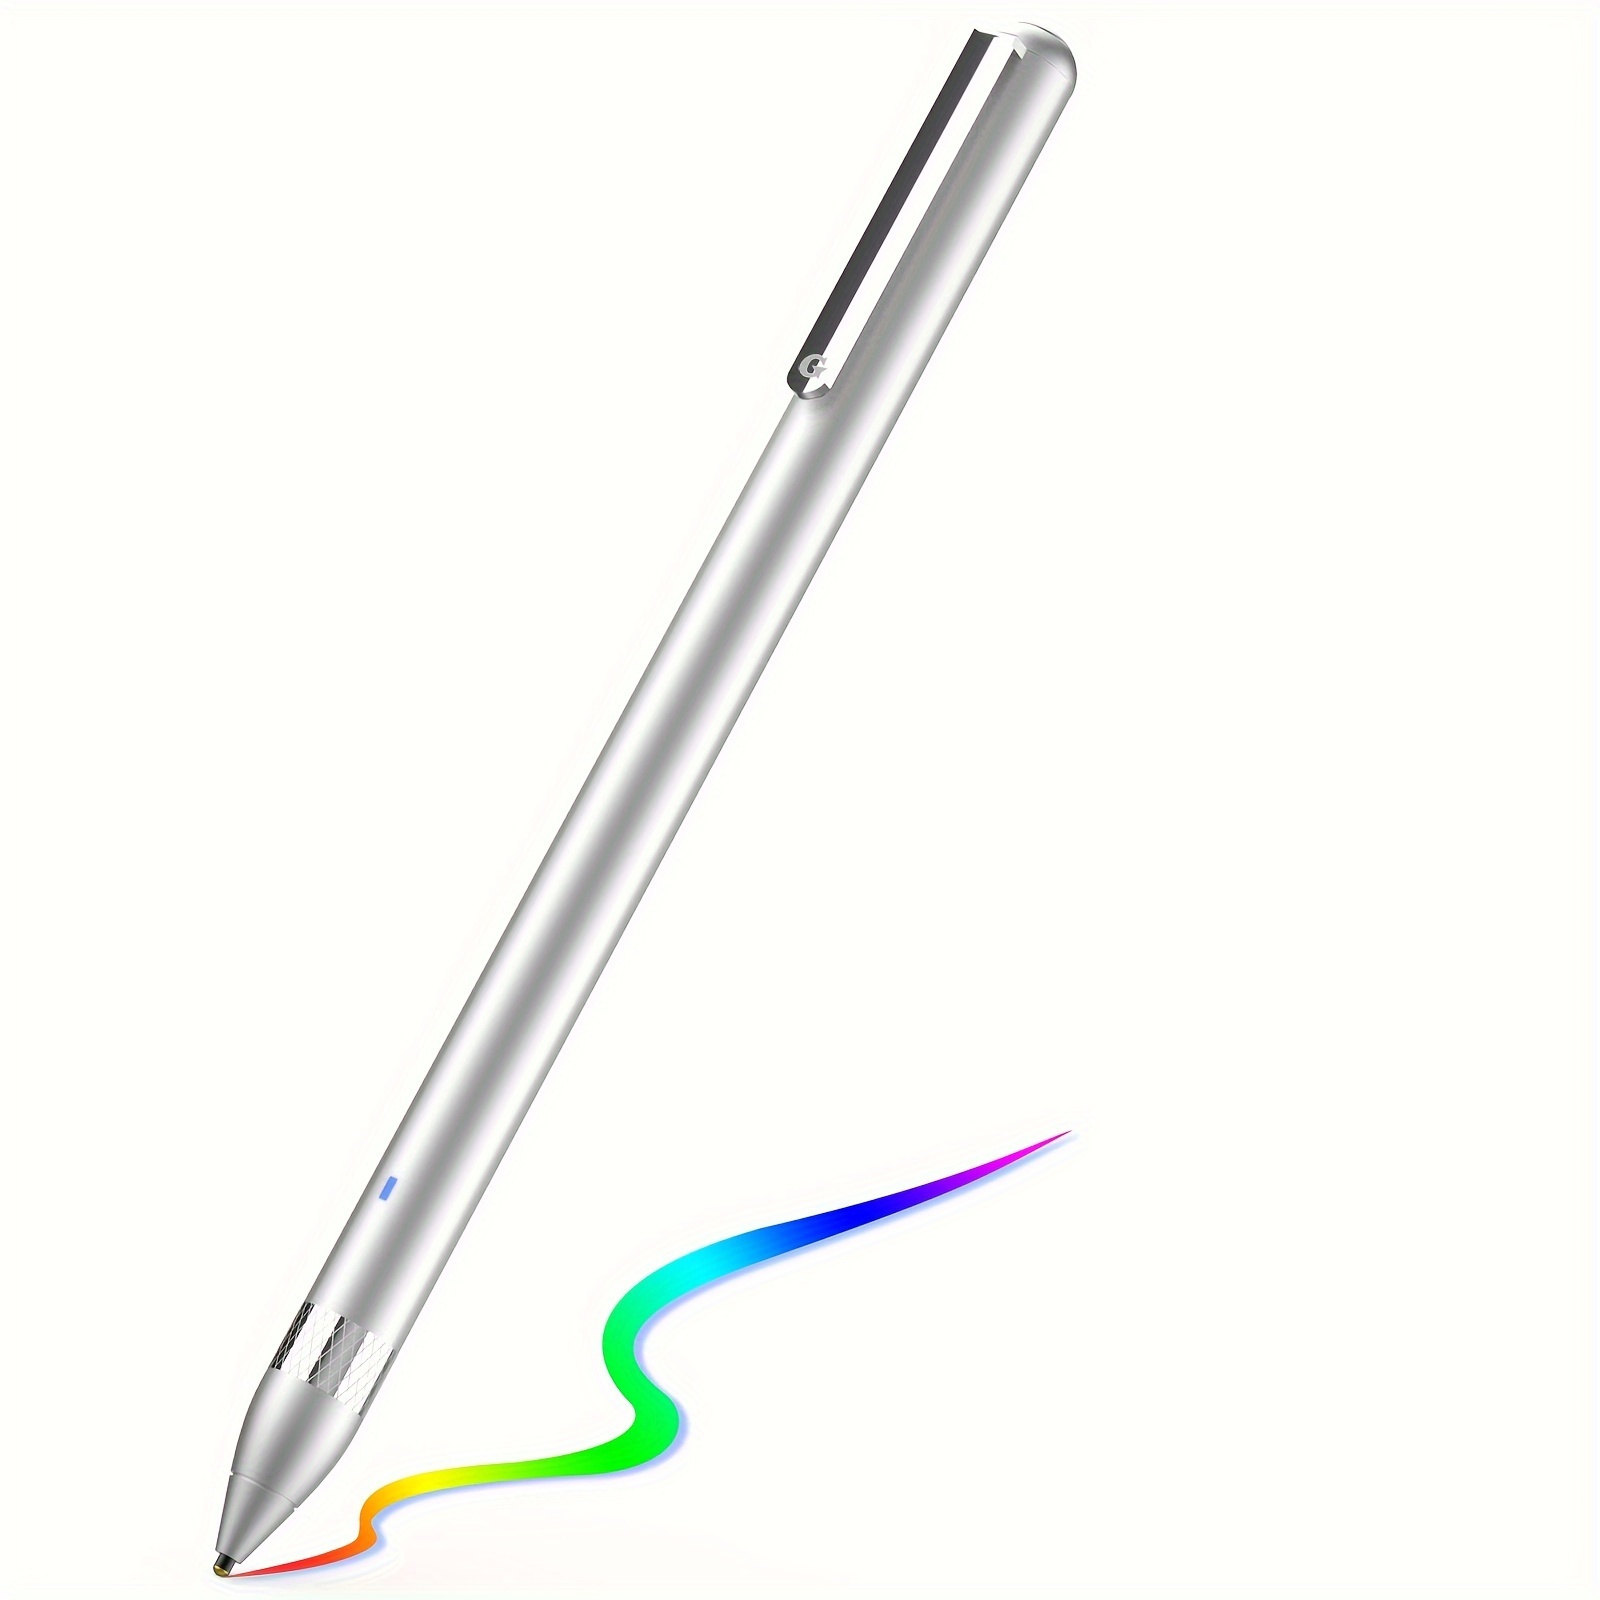 Penna digitale stilo per touch screen su smartphone e tablet touch